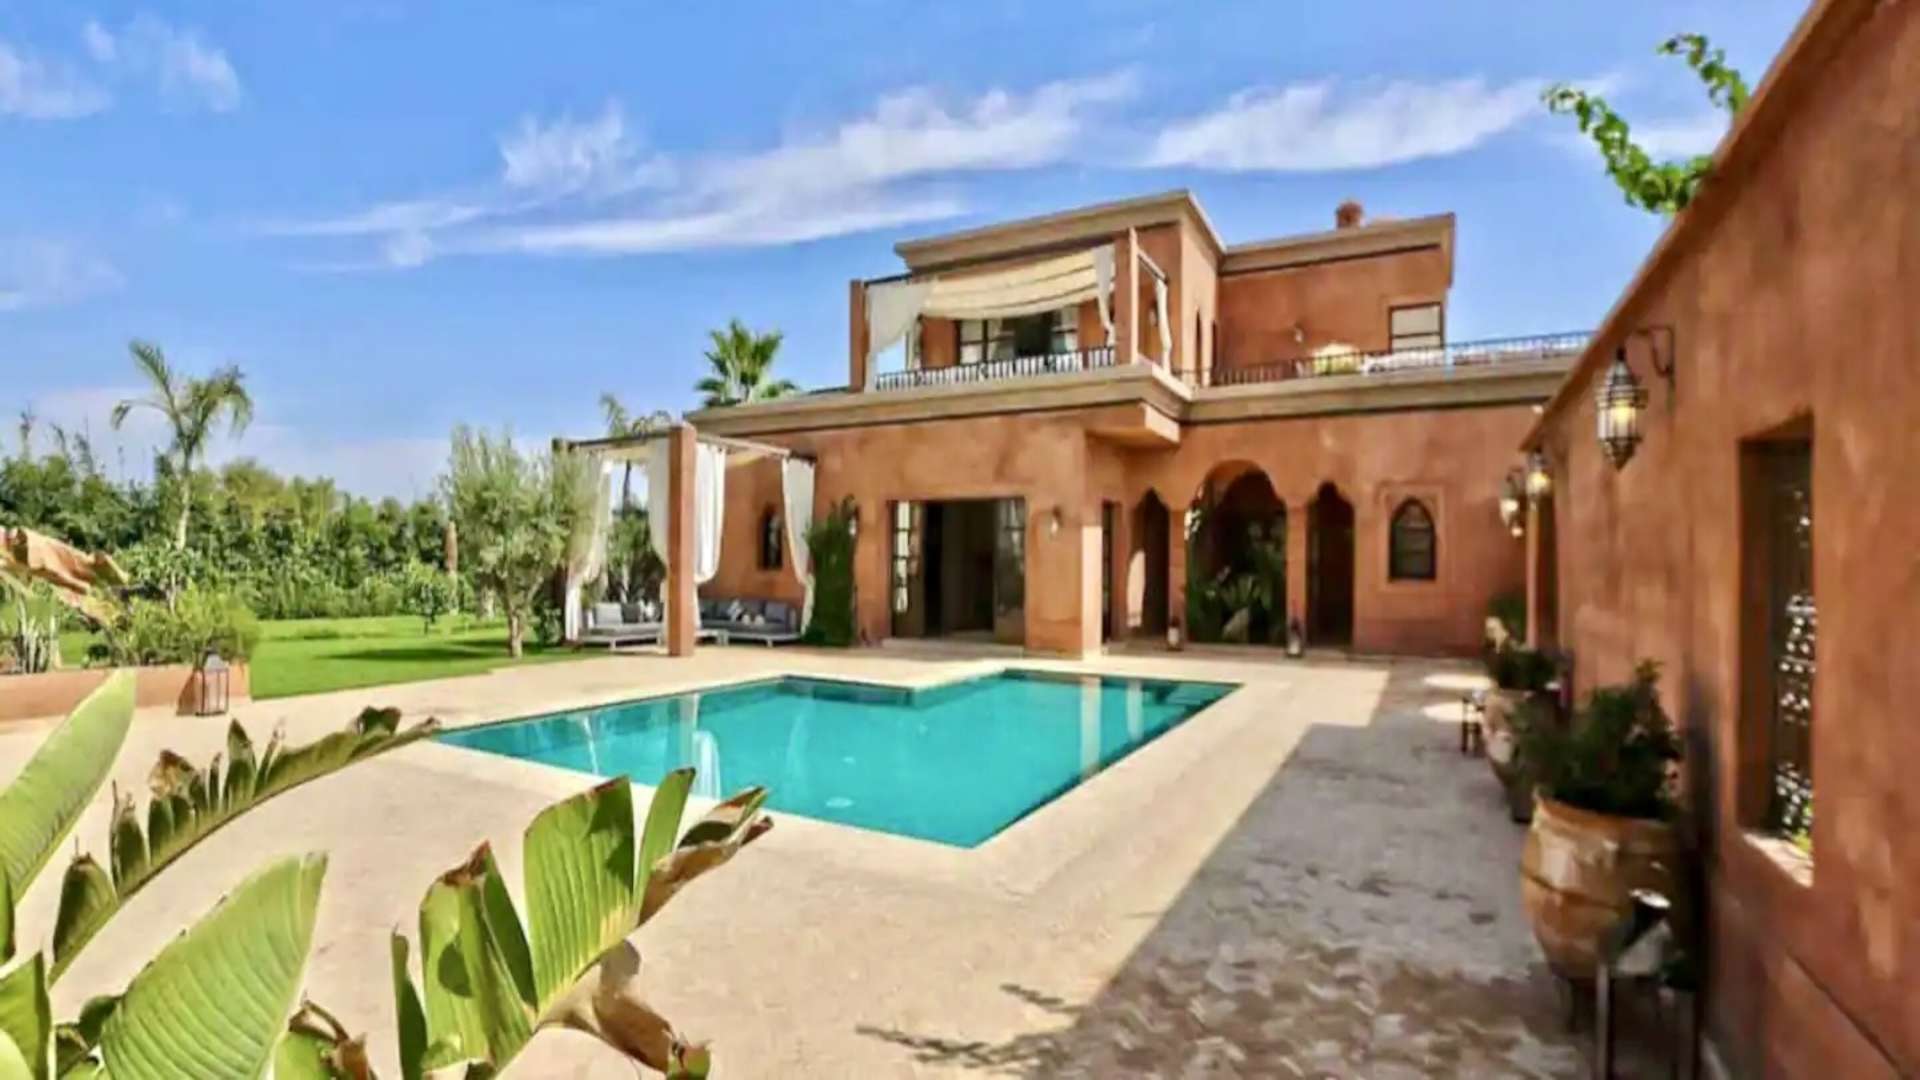 Location de vacances,Villa,Superbe villa 5ch à 15 min du centre de Marrakech sur la route de Ouarzazate ,Marrakech,Route d'Ouarzazate